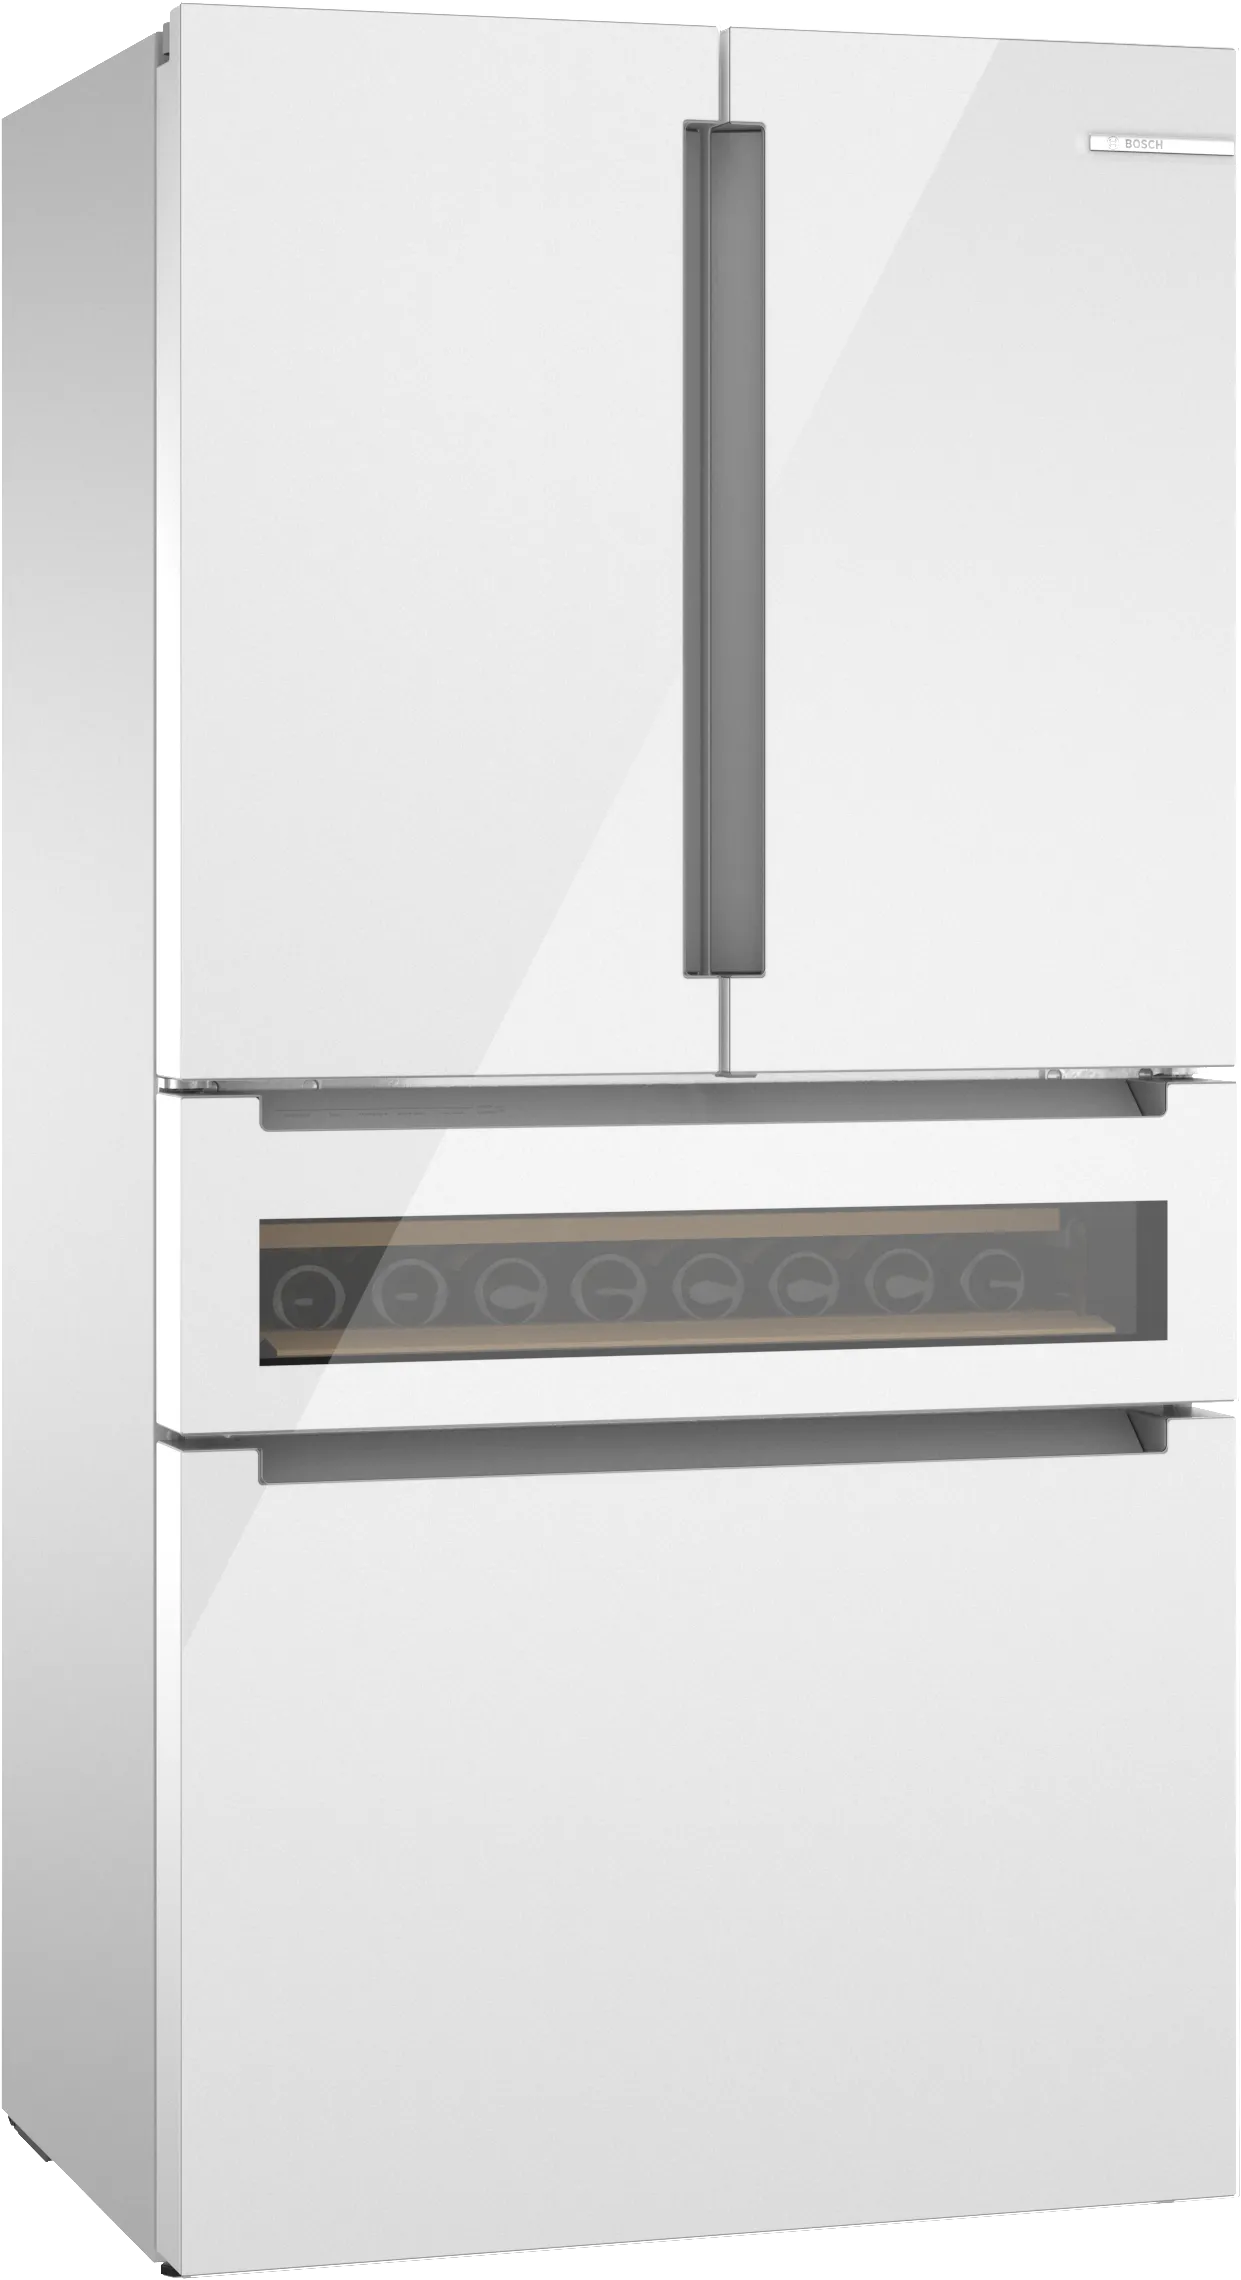 800 Series French Door Bottom Mount Refrigerator, Glass door 36'' White 